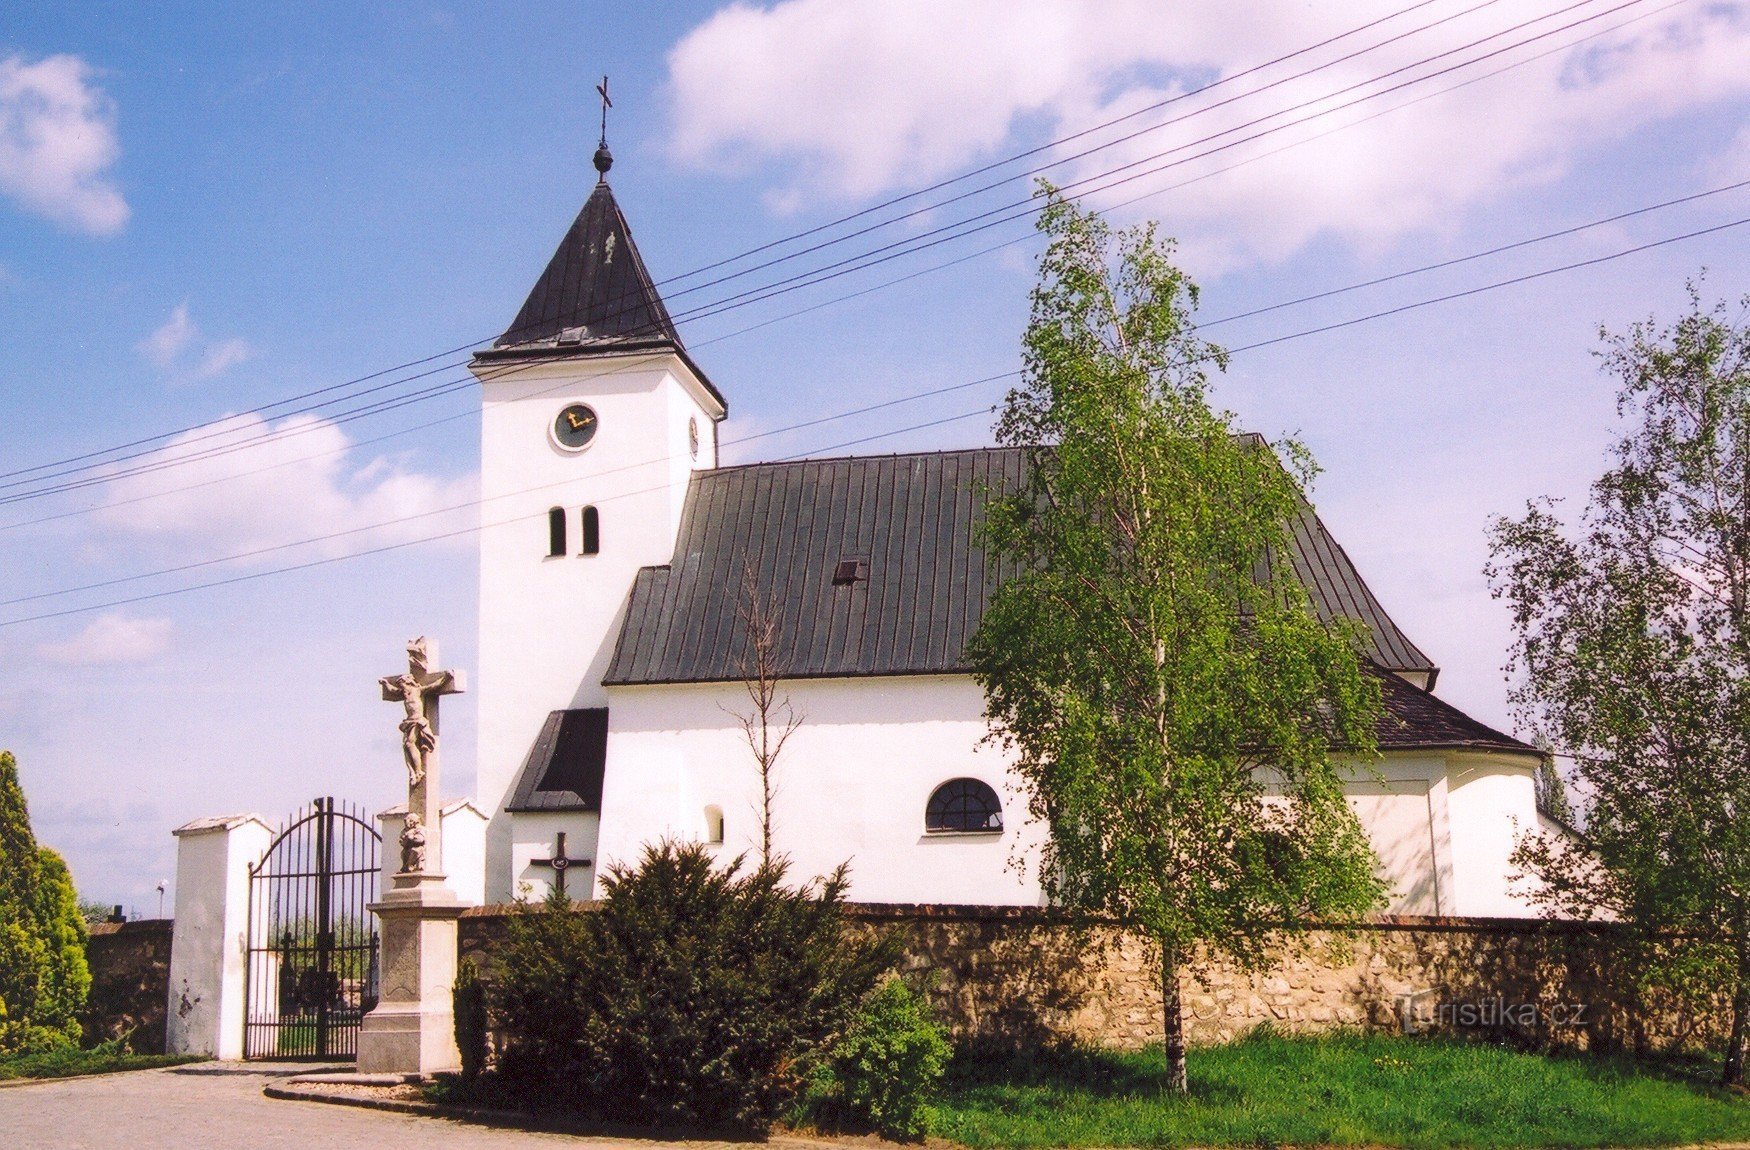 Žatčany - Biserica Sfintei Treimi